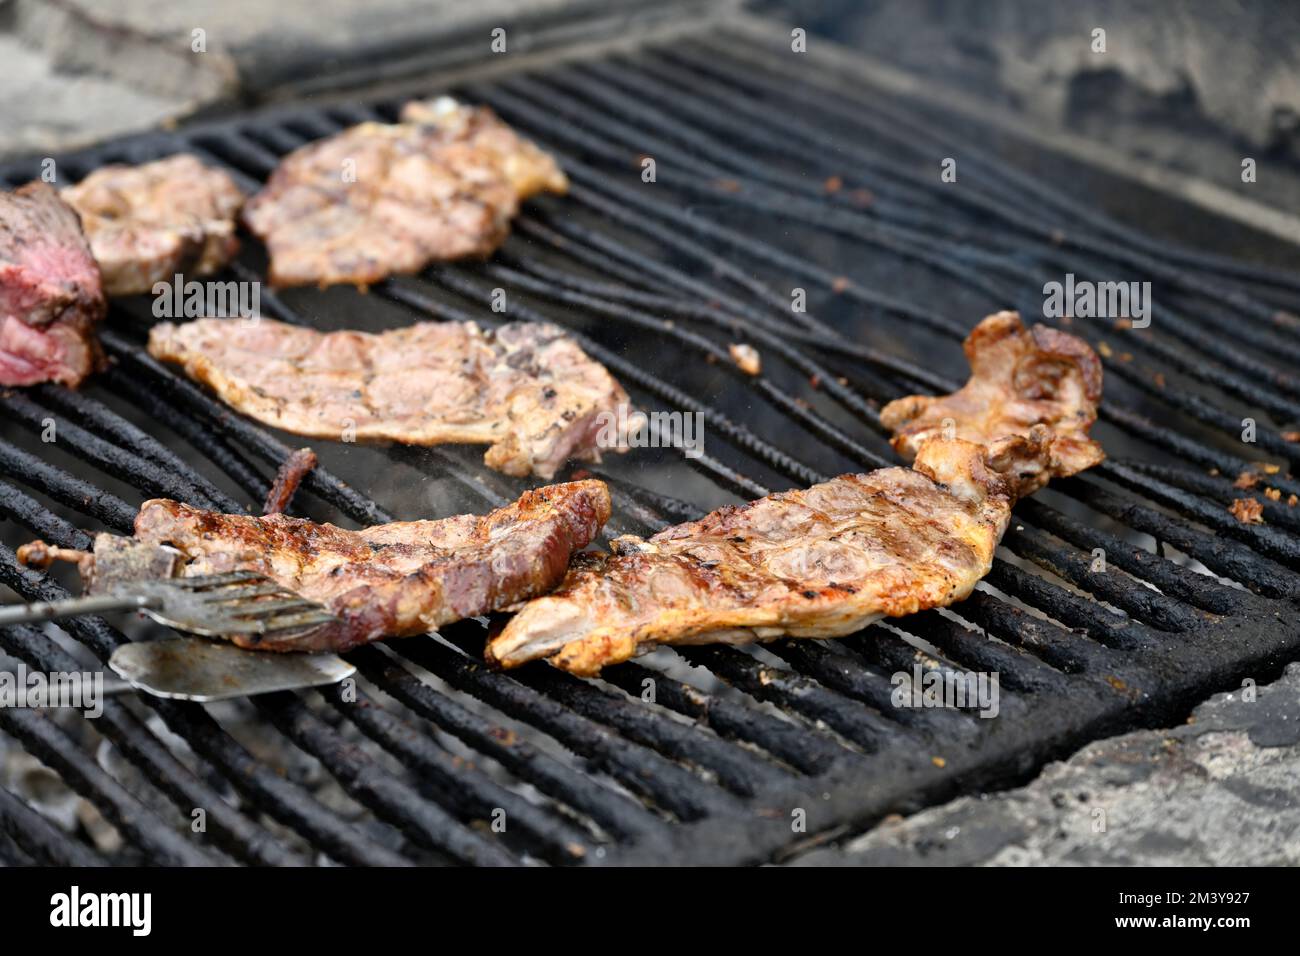 Fleisch wird auf einem traditionellen öffentlichen Barbecue im Park zubereitet Stockfoto